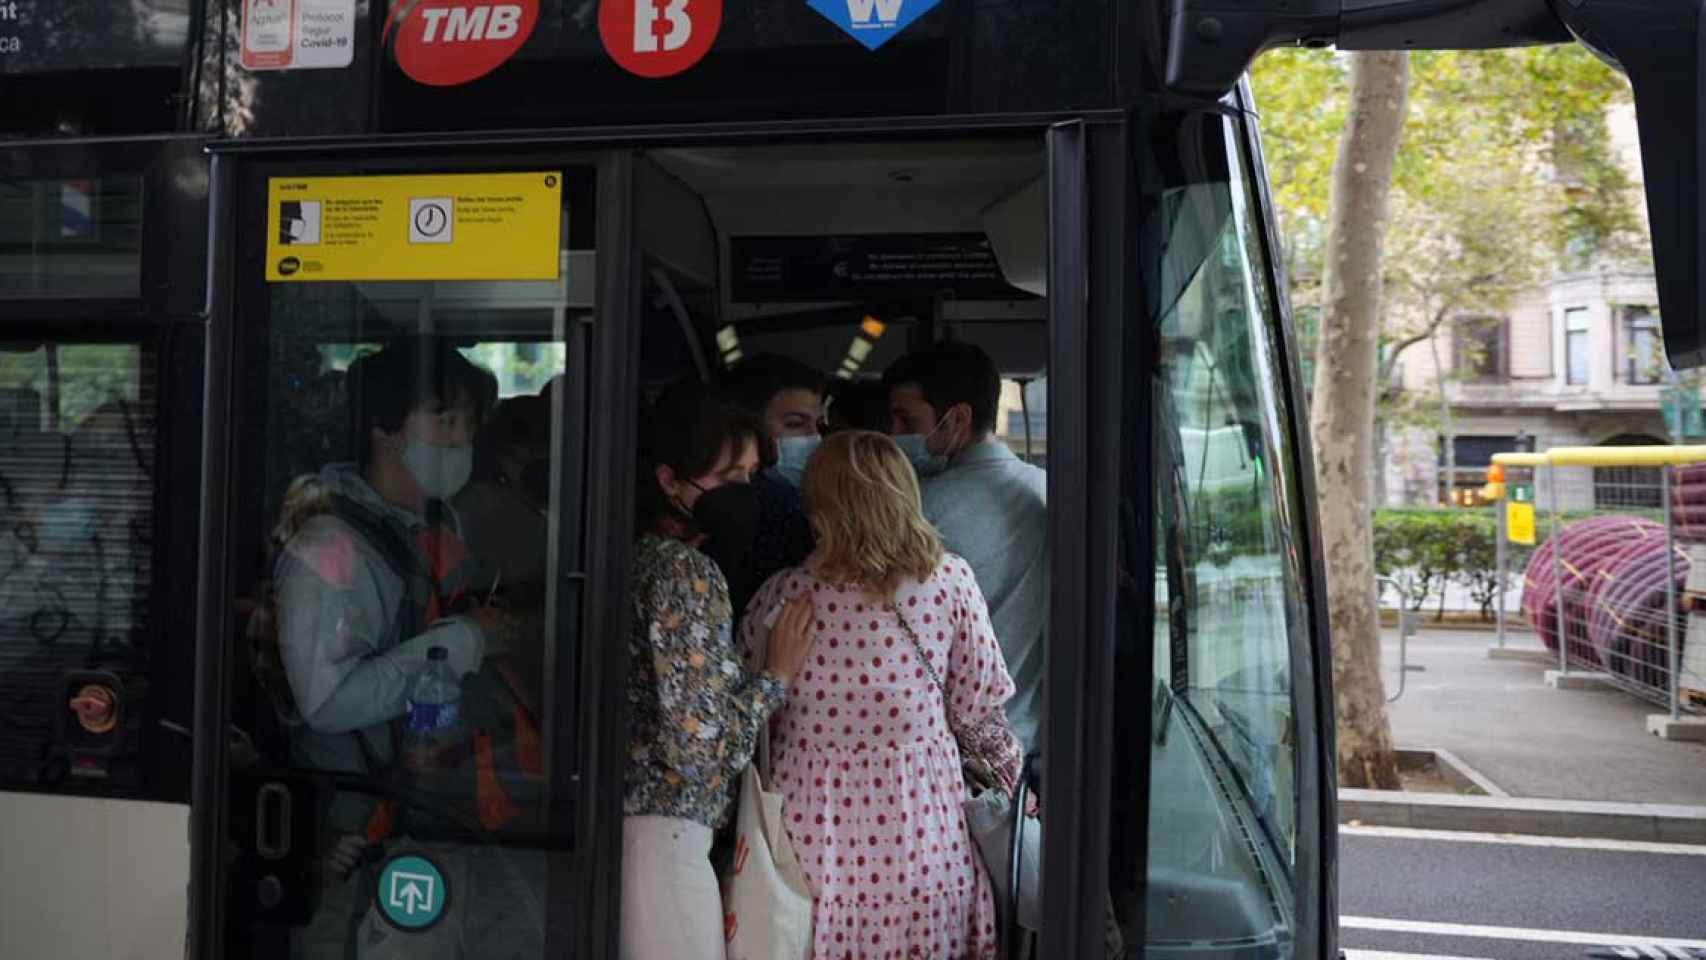 Un bus de TMB de Barcelona con aglomeración de personas por la huelga / LUIS MIGUEL AÑÓN (CG)